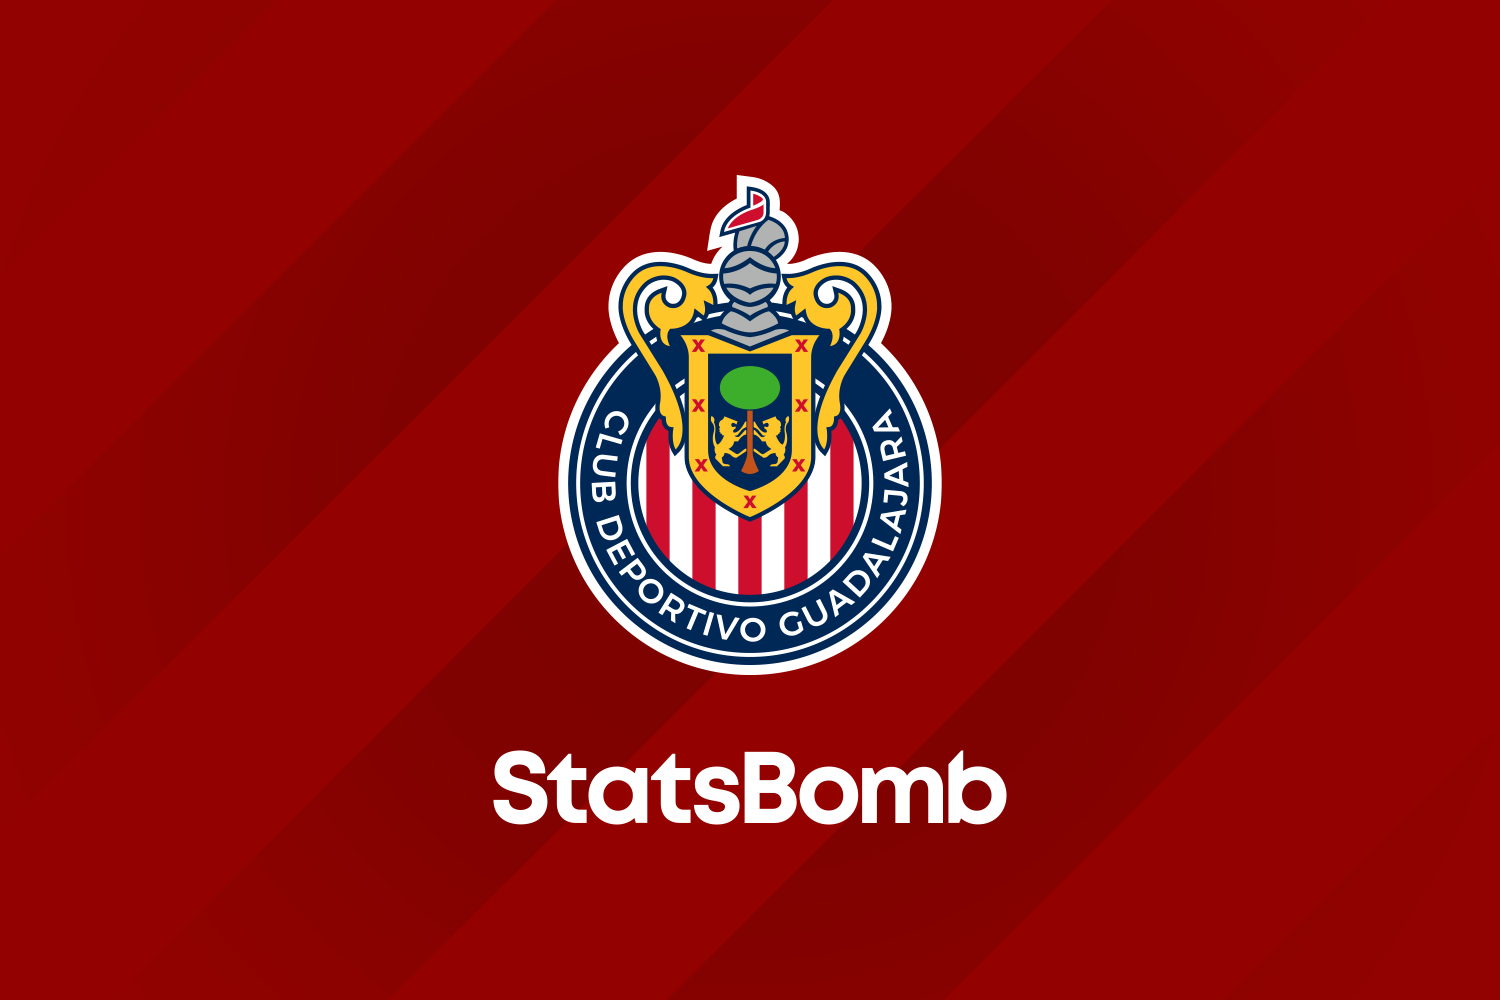 StatsBomb firma un acuerdo con el Club Deportivo Guadalajara